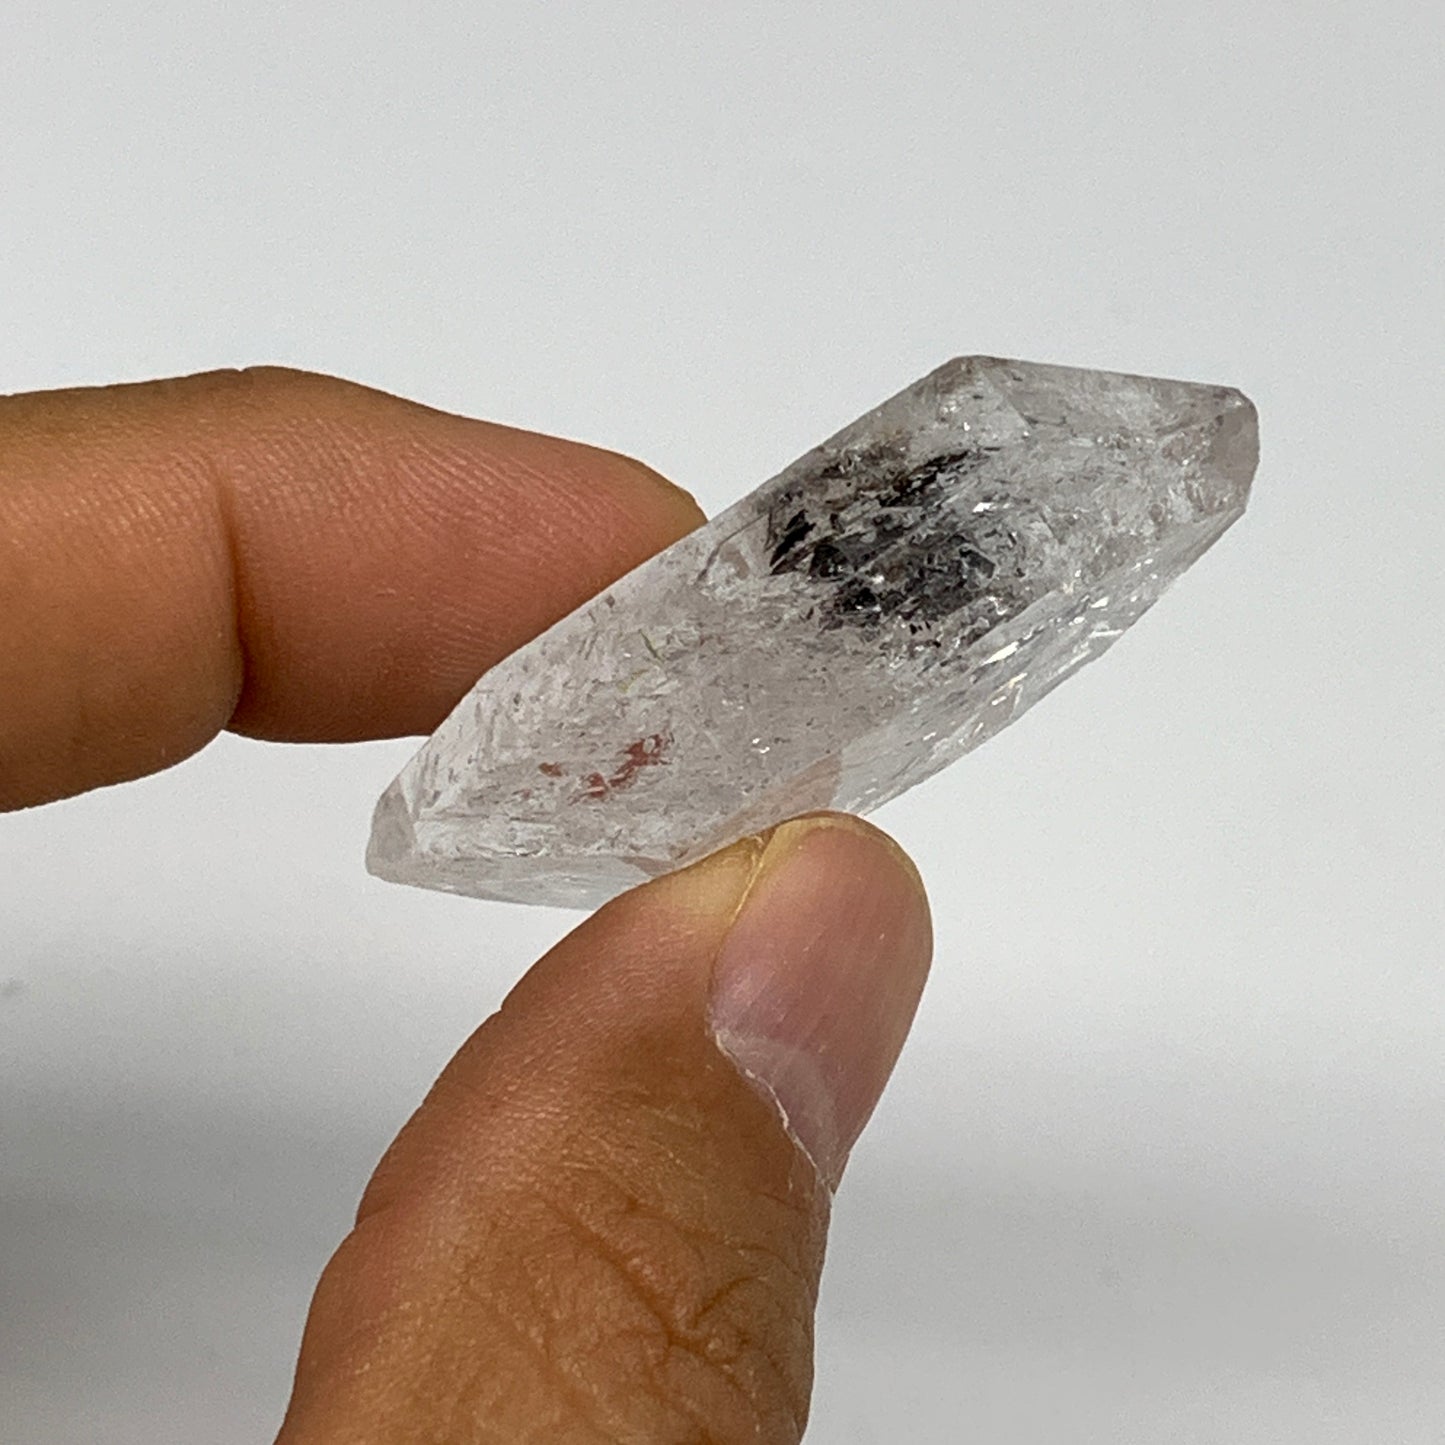 14.8g, 1.7"x0.8"x0.6", Natural Window Quartz Crystal Terminated @Pakistan,B27539